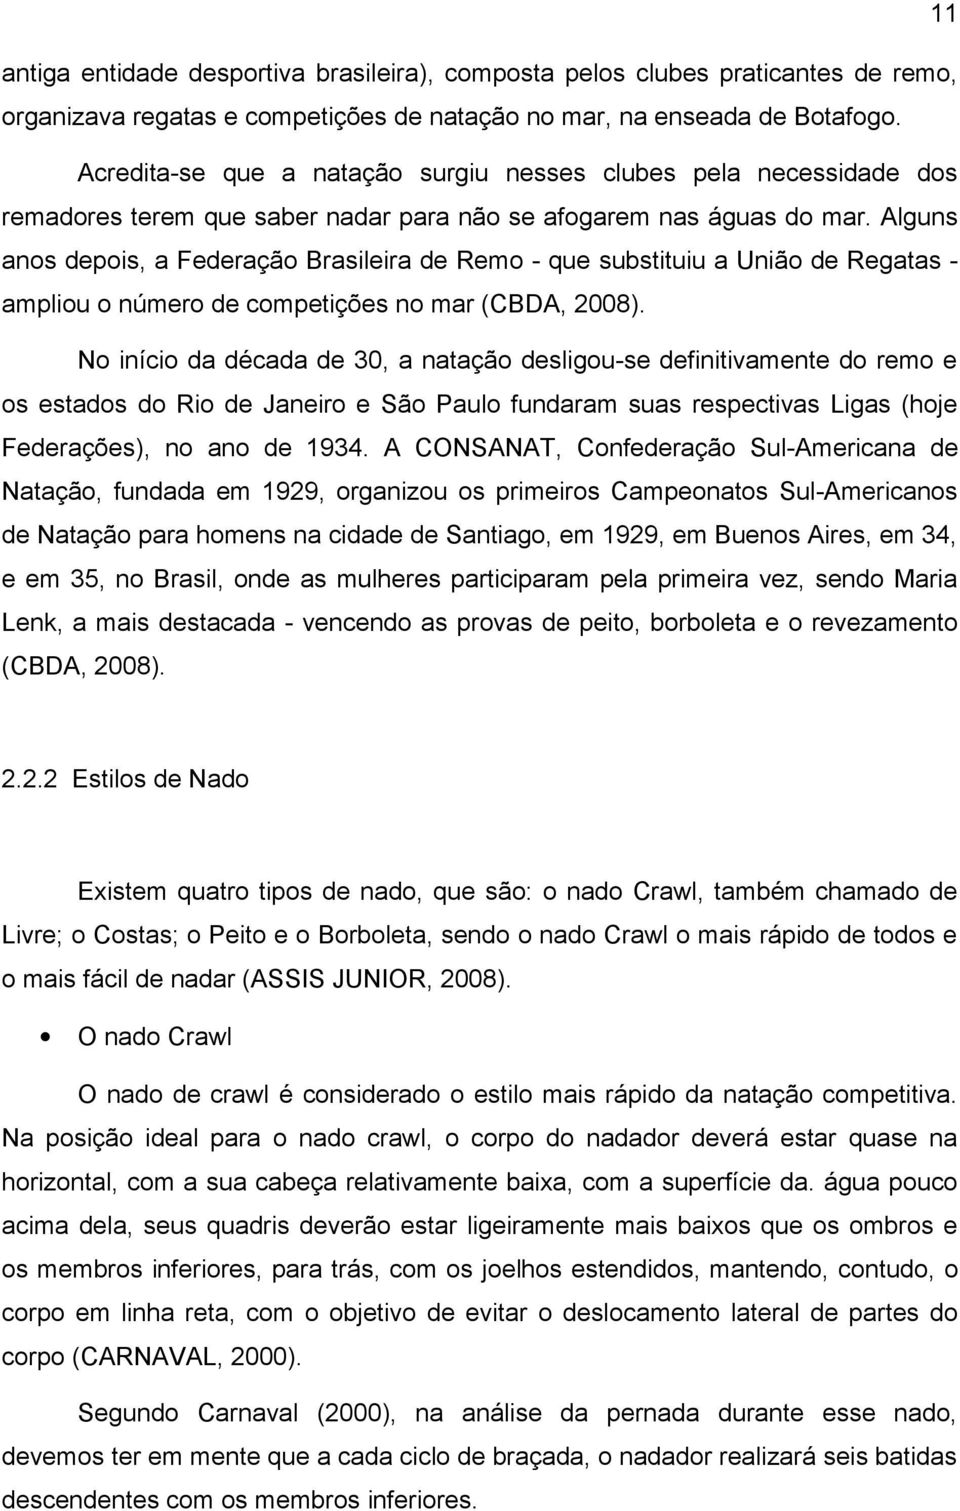 Alguns anos depois, a Federação Brasileira de Remo - que substituiu a União de Regatas - ampliou o número de competições no mar (CBDA, 2008).